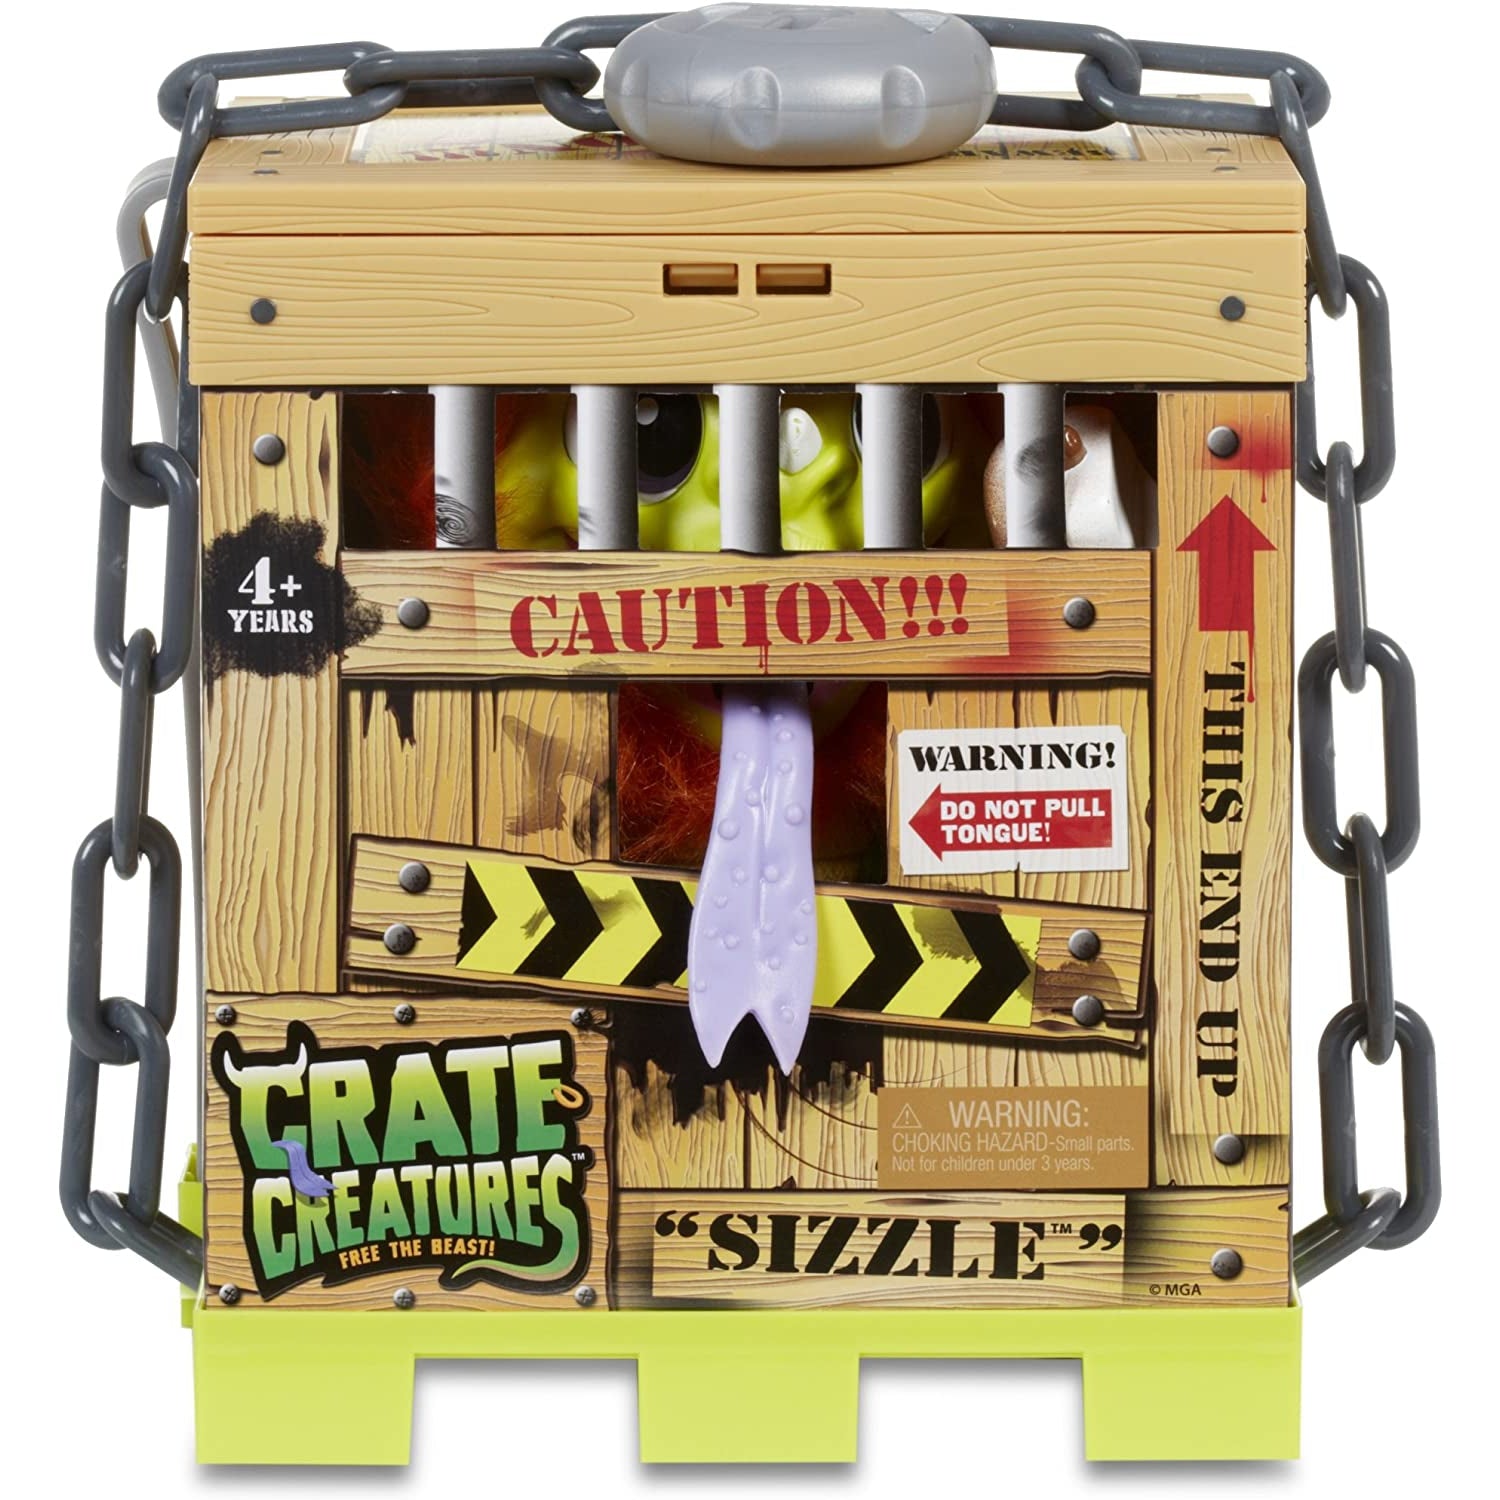 Crate Creatures Surprise - Sizzle